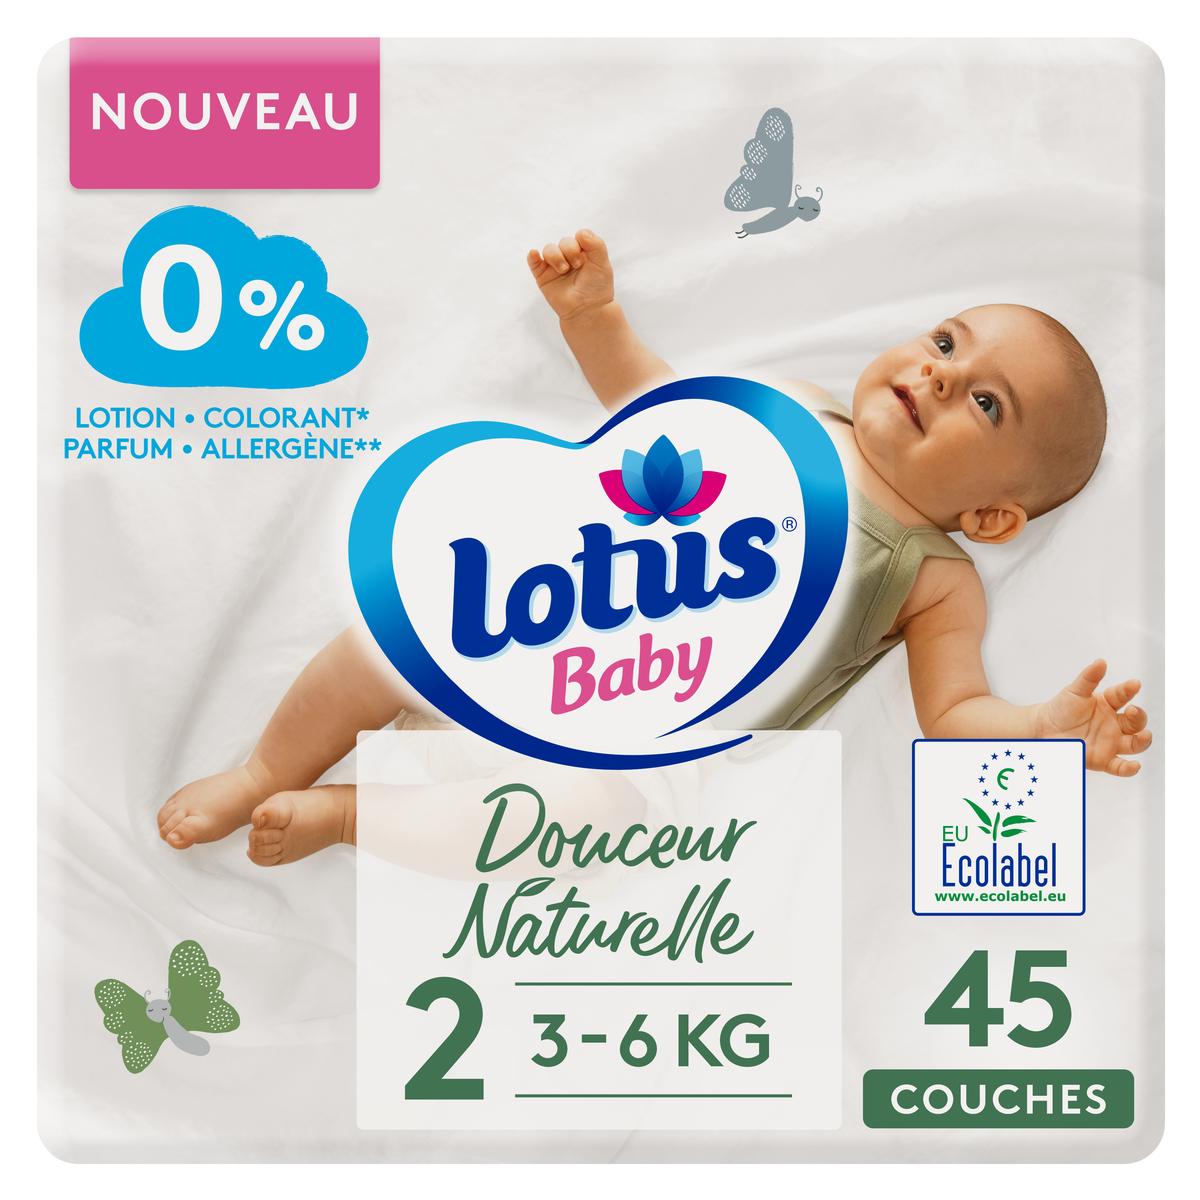 Achat Lotus Baby Couches bébé T2 3/6kg - Douceur Naturelle, 45 couches